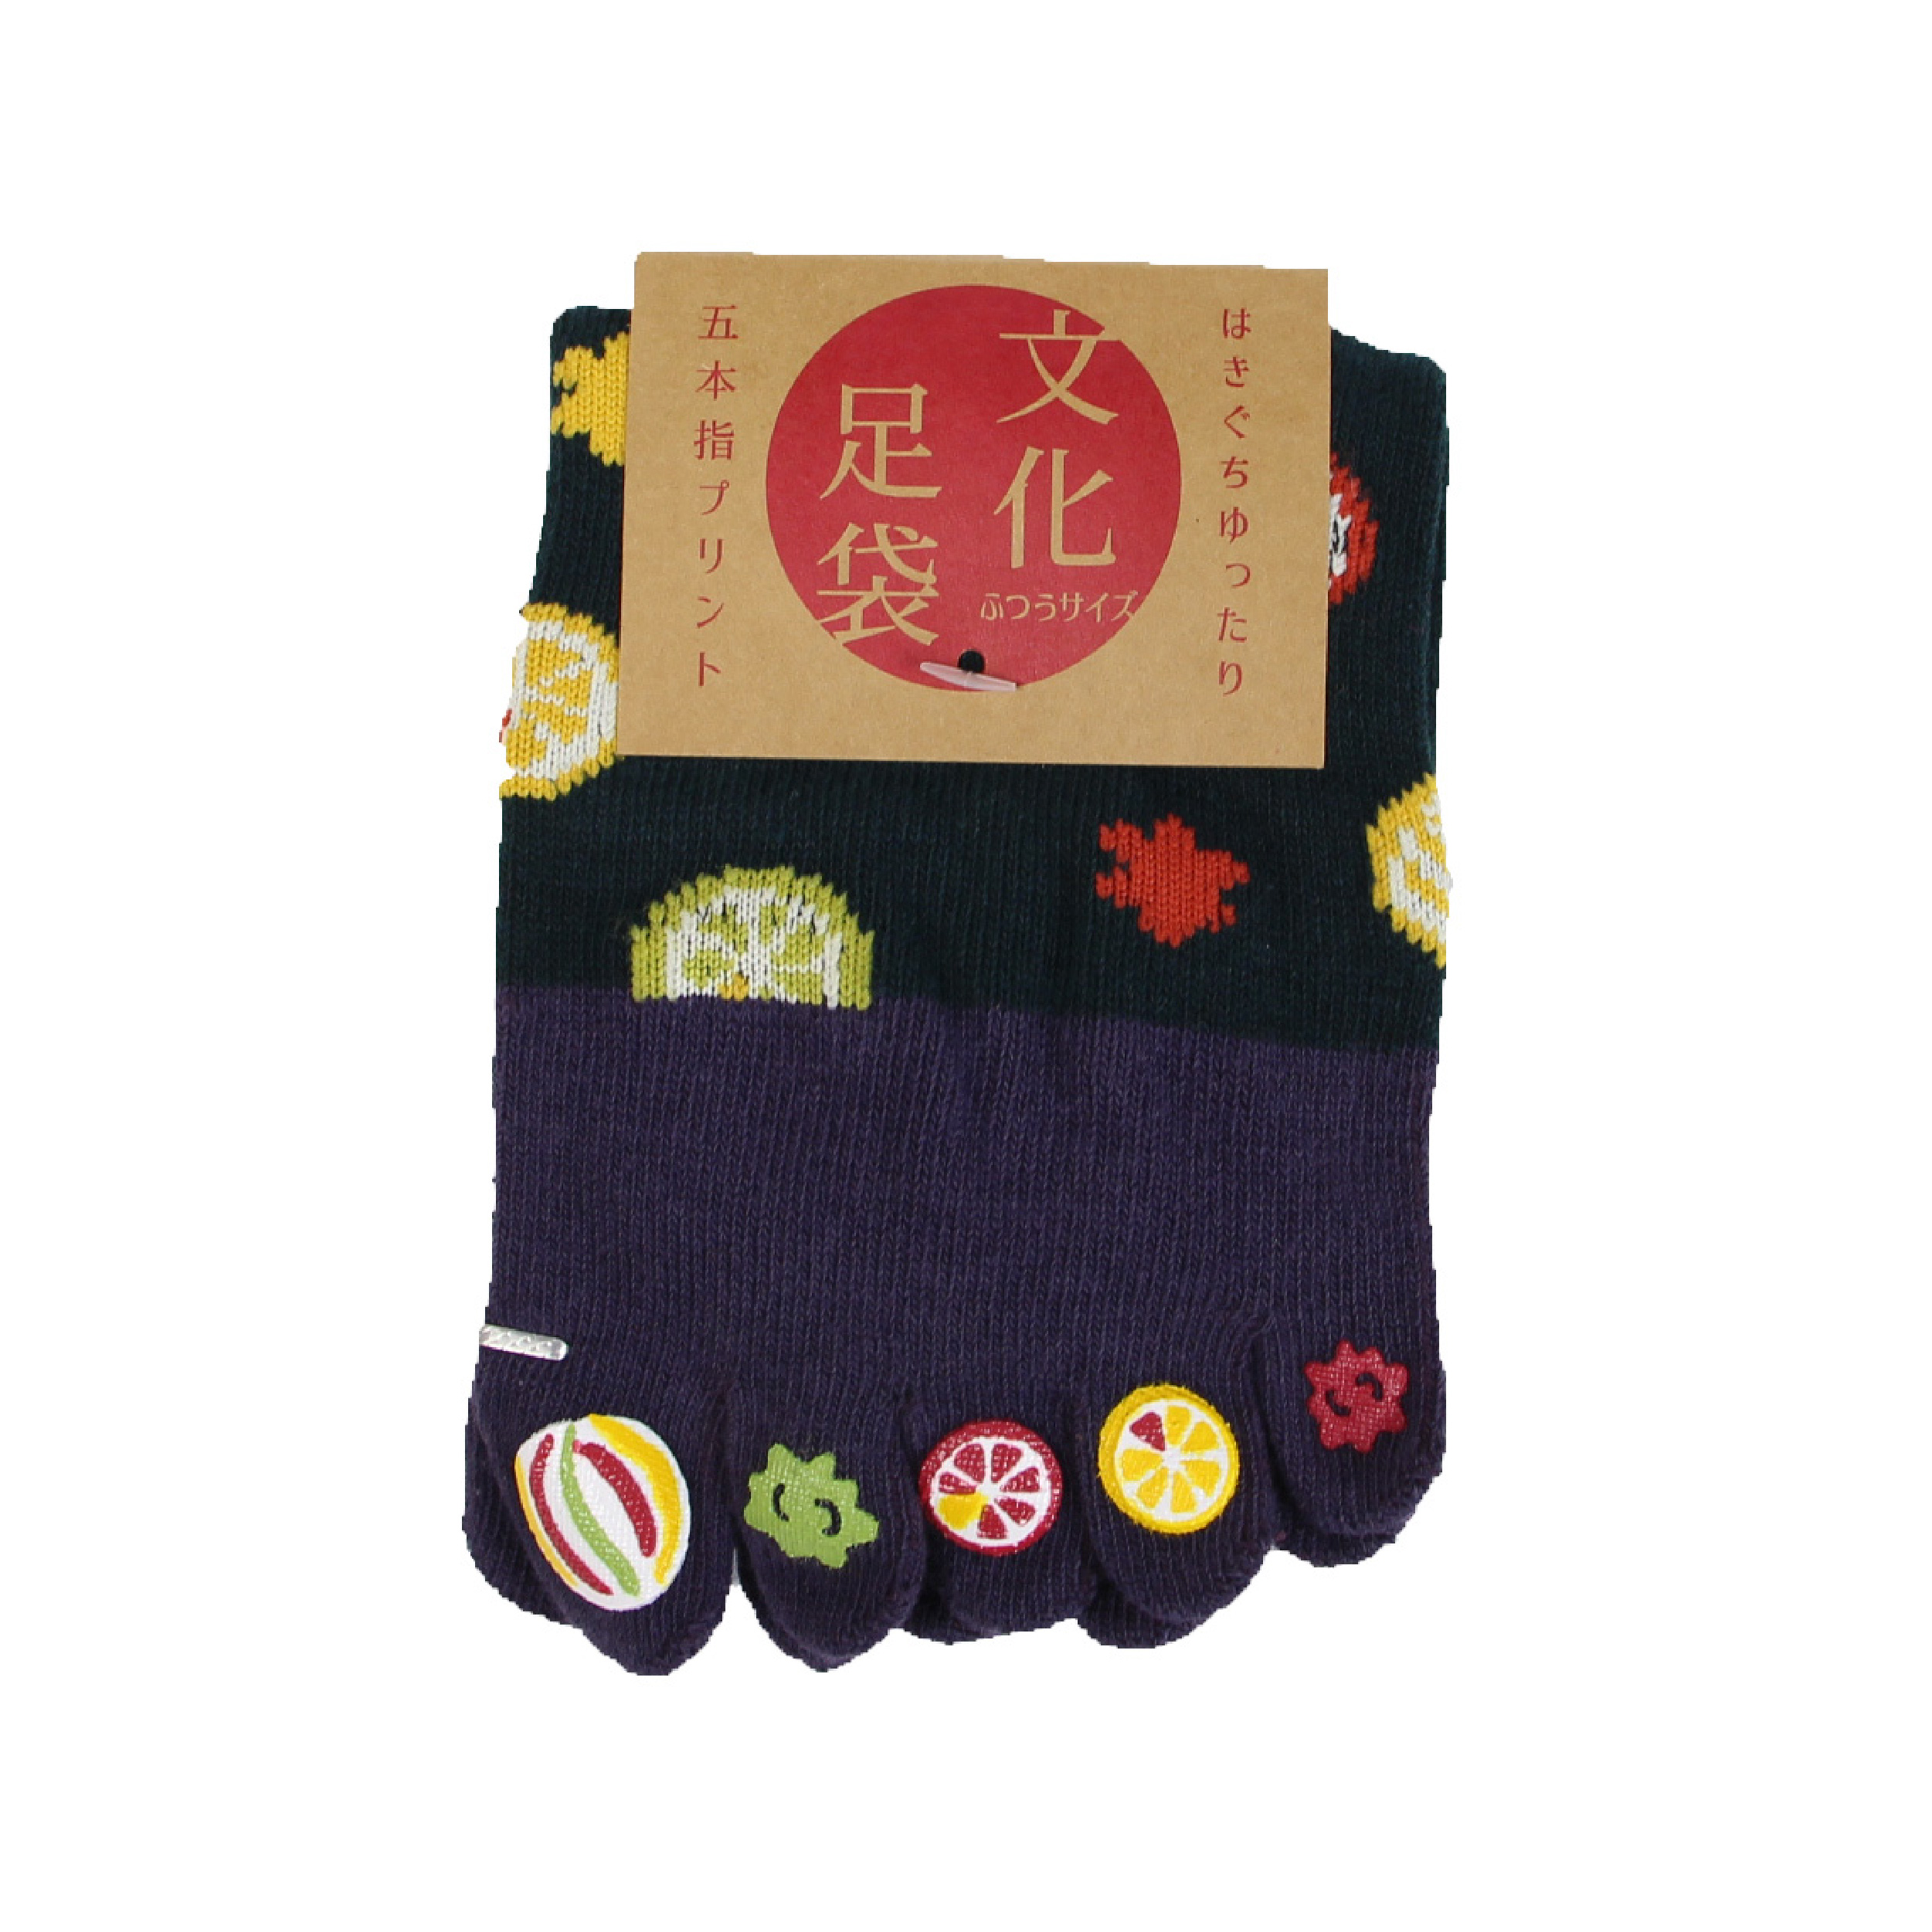 靴下 レディース 女性用 全10種 ソックス 5本指 和柄 蒸れない 京都和雑貨 おしゃれ かわいい